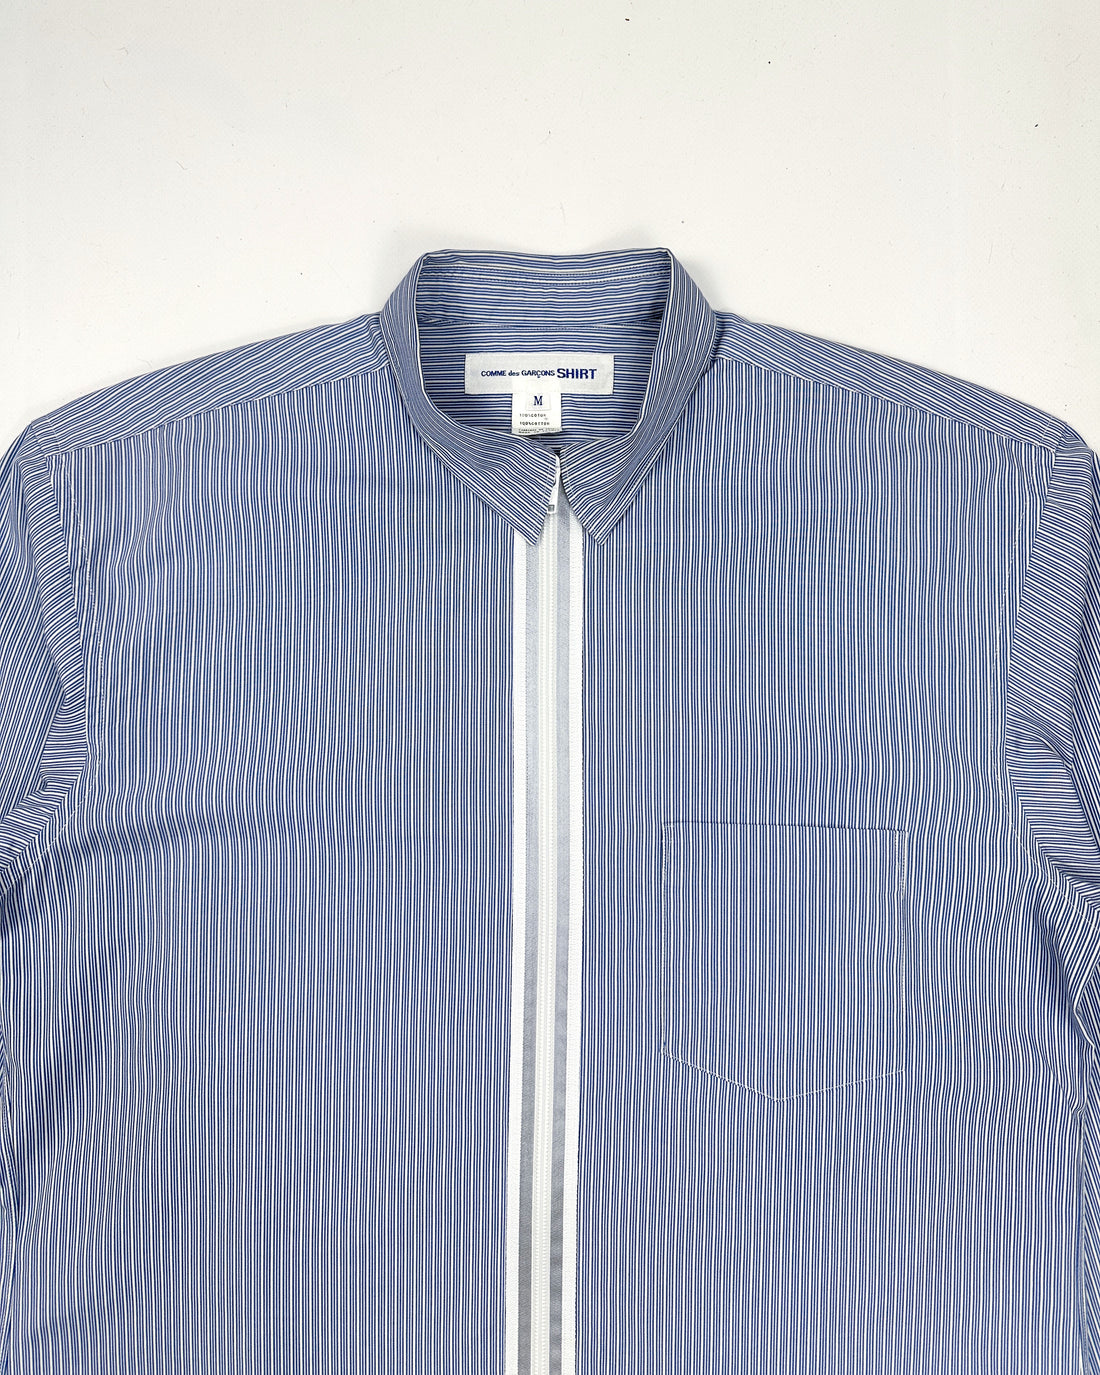 Comme des Garçons Shirt Zipped Blue Striped Shirt 2000's